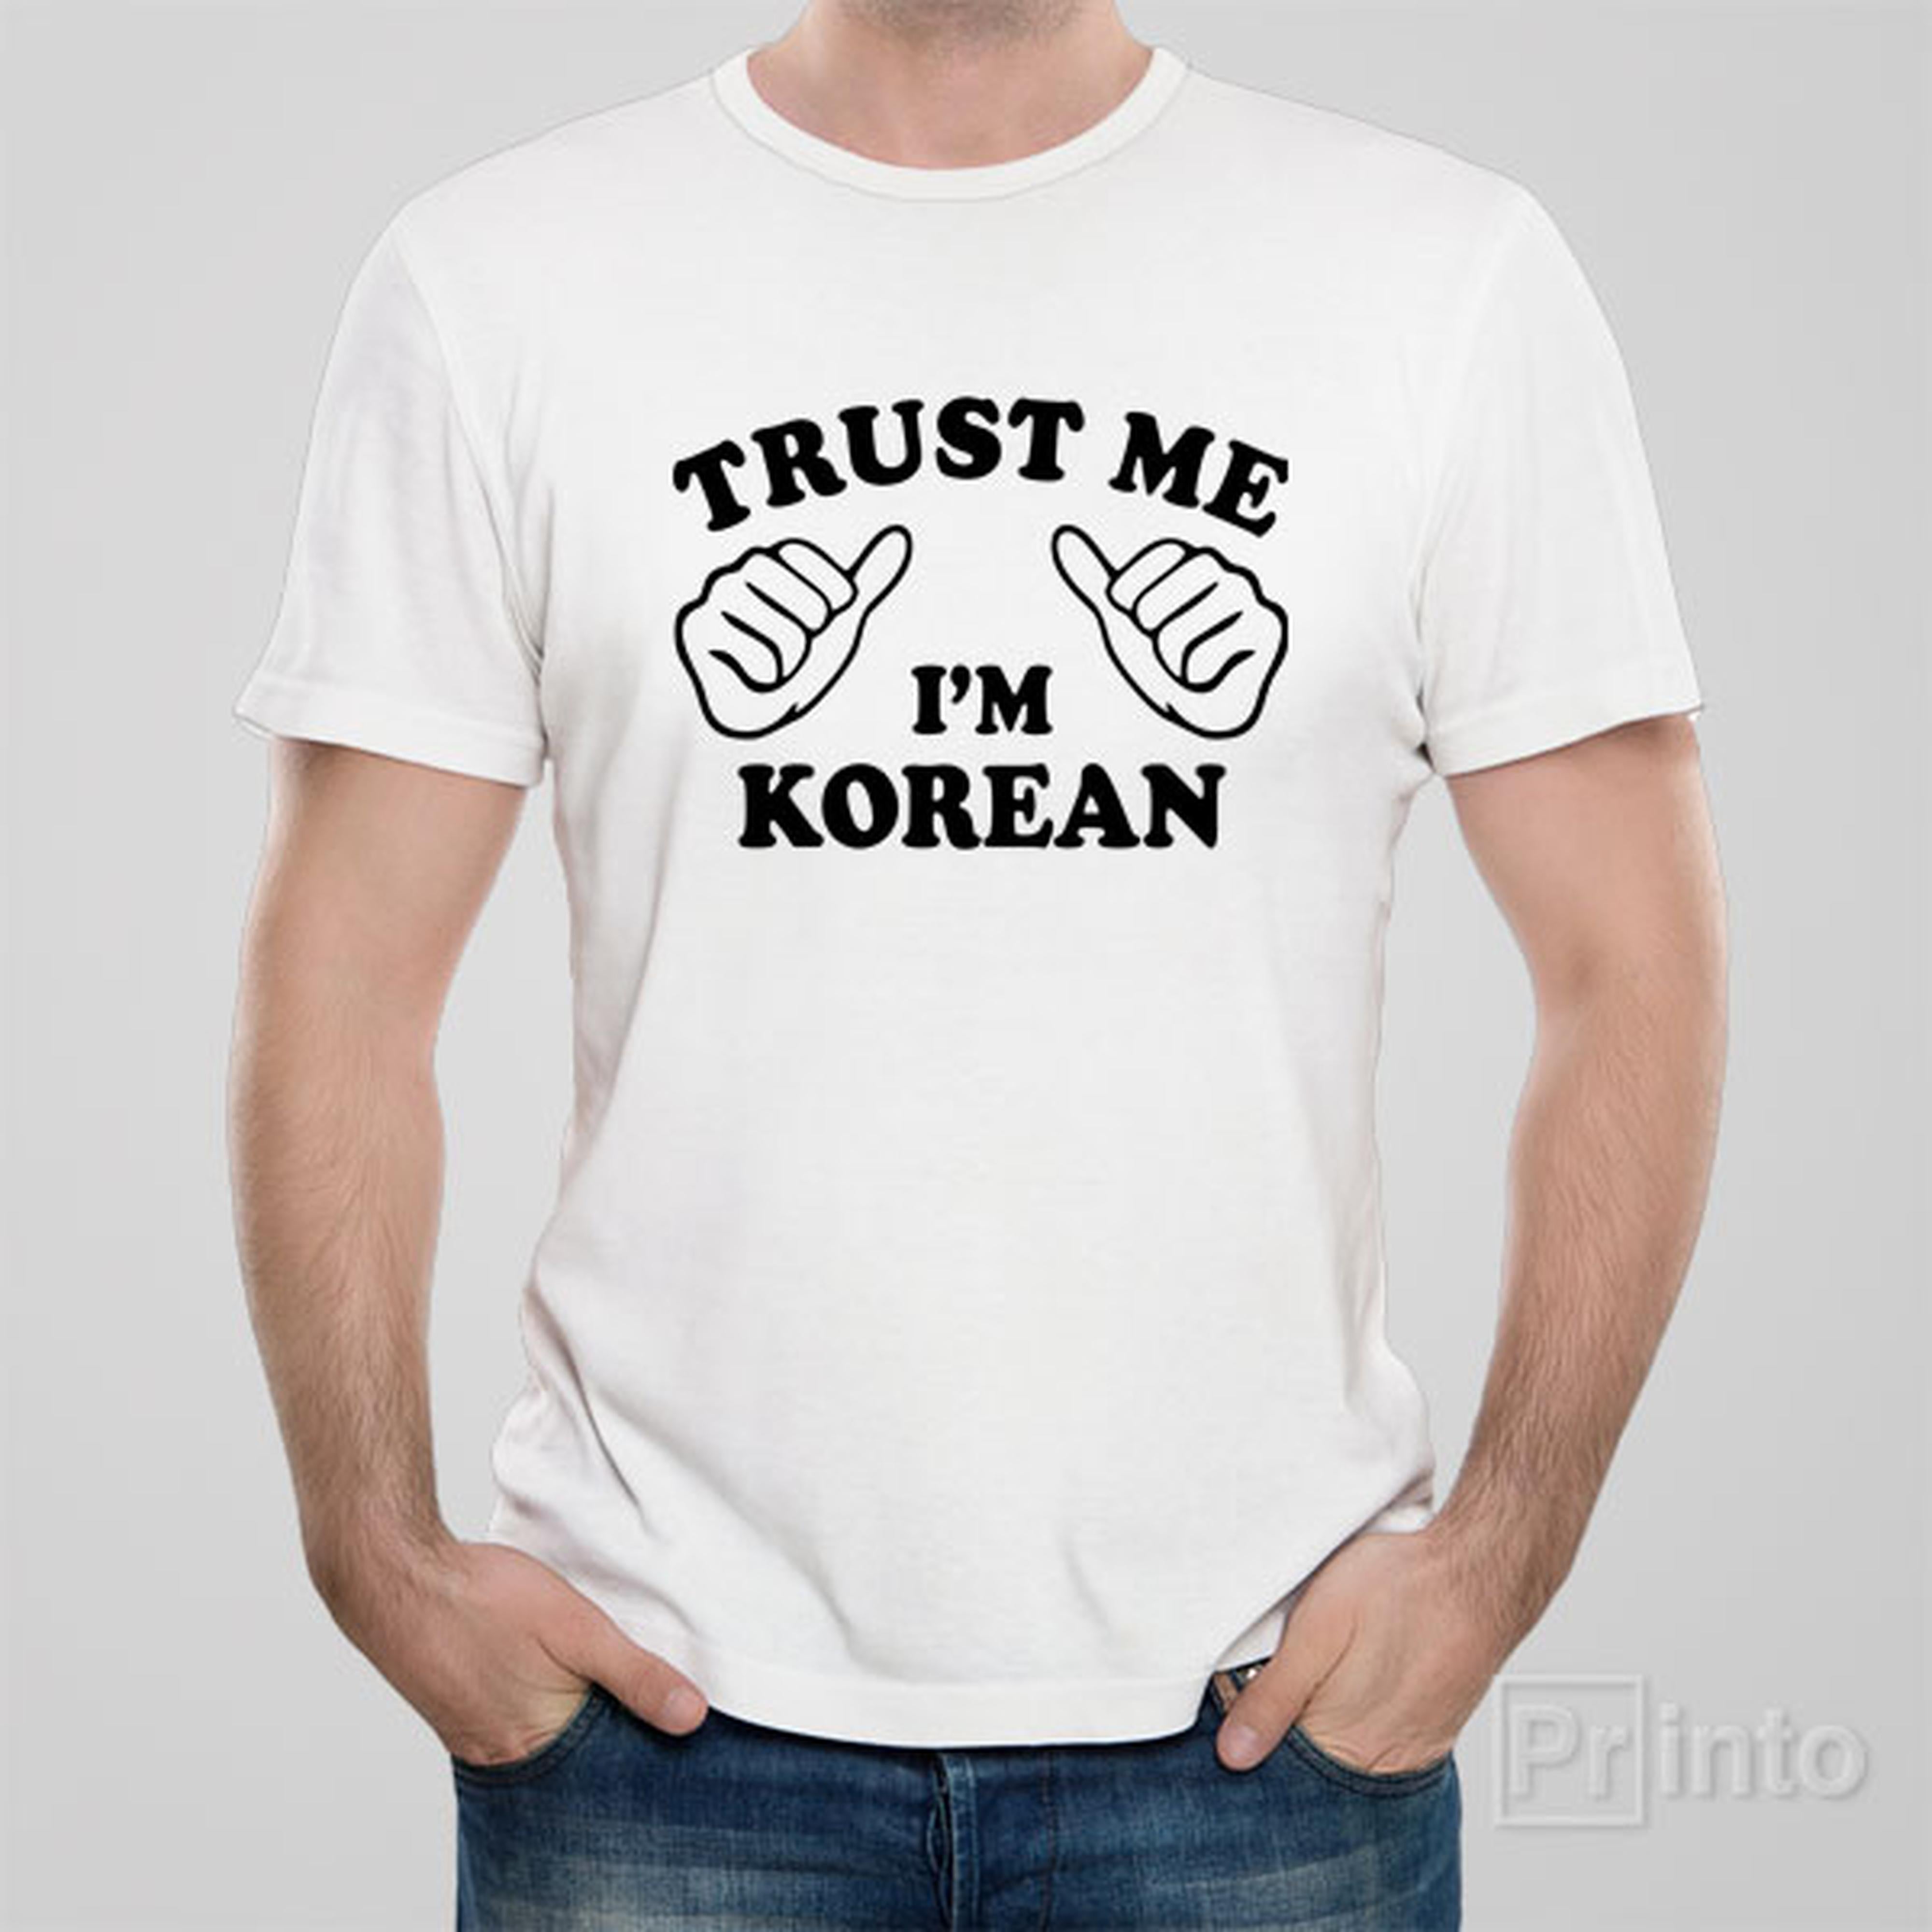 trust-me-i-am-korean-t-shirt